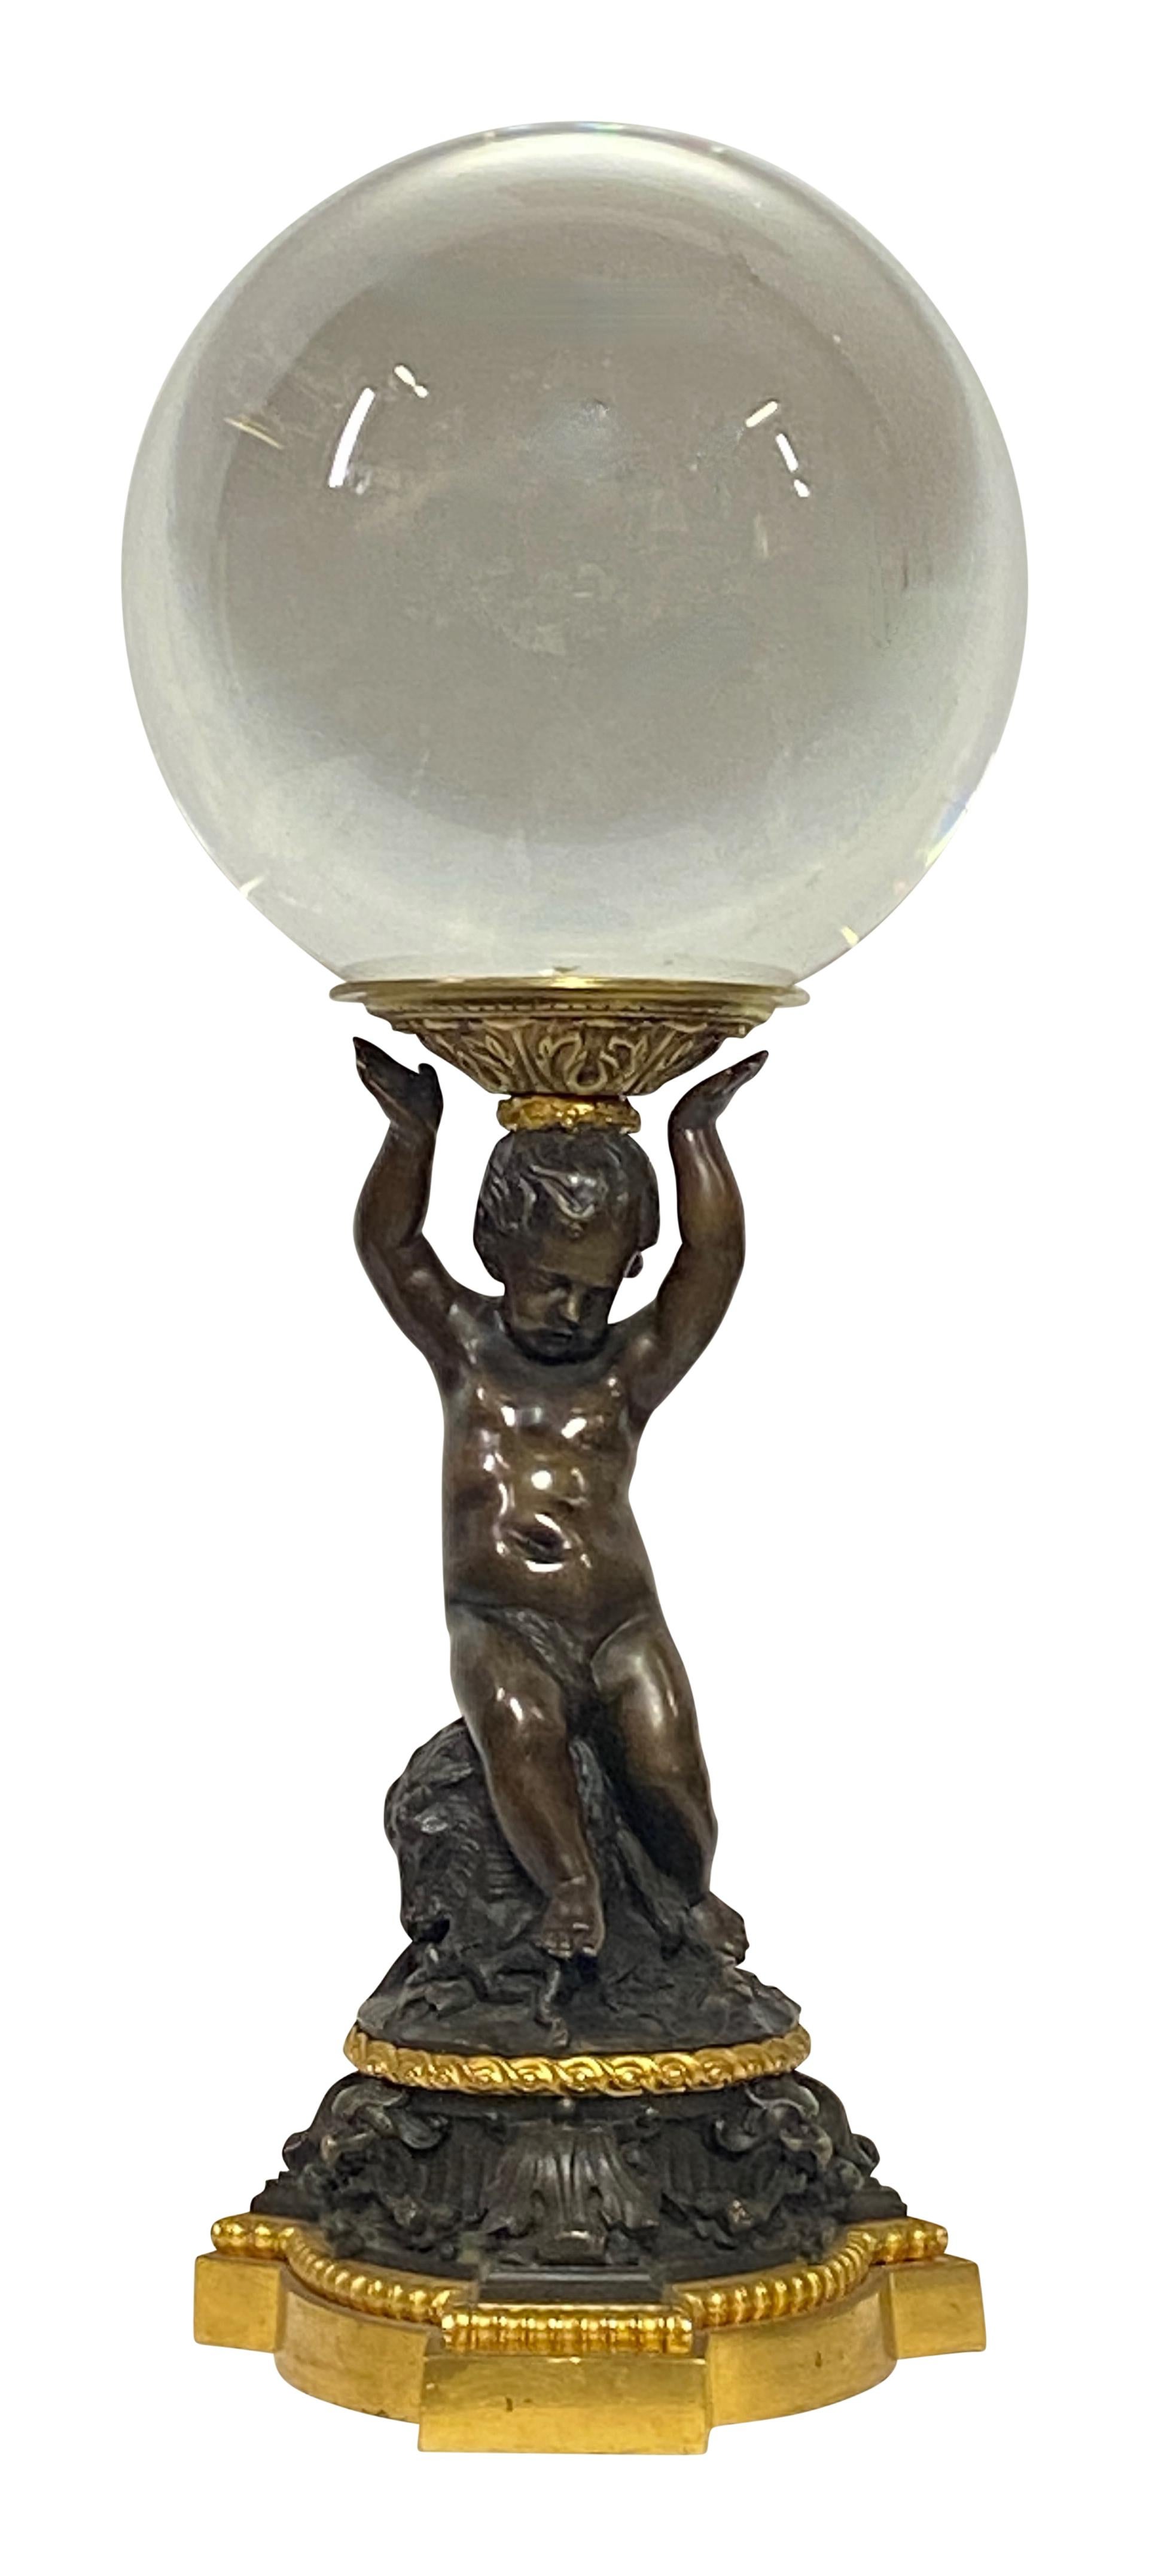 Ein außergewöhnlicher Sockel aus patinierter und vergoldeter Bronze im Renaissancestil aus dem frühen bis mittleren 19. Jahrhundert. Die Figur hält eine Kristallkugel mit einem Durchmesser von 10 Zoll.  
Schöne Qualität und Details.